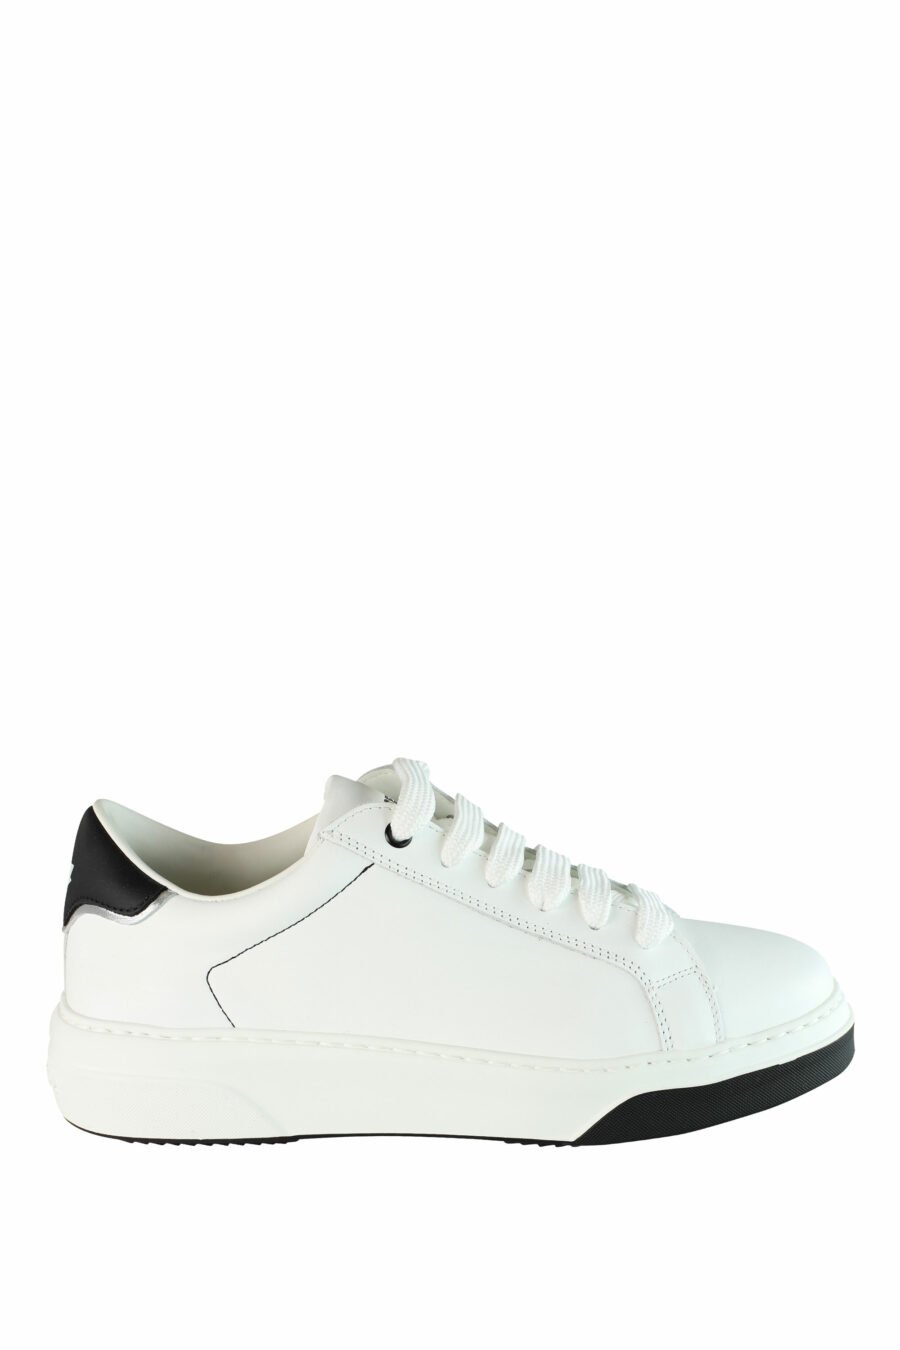 Zapatillas blancas "bumper" con detalles negros y logo - IMG 1425